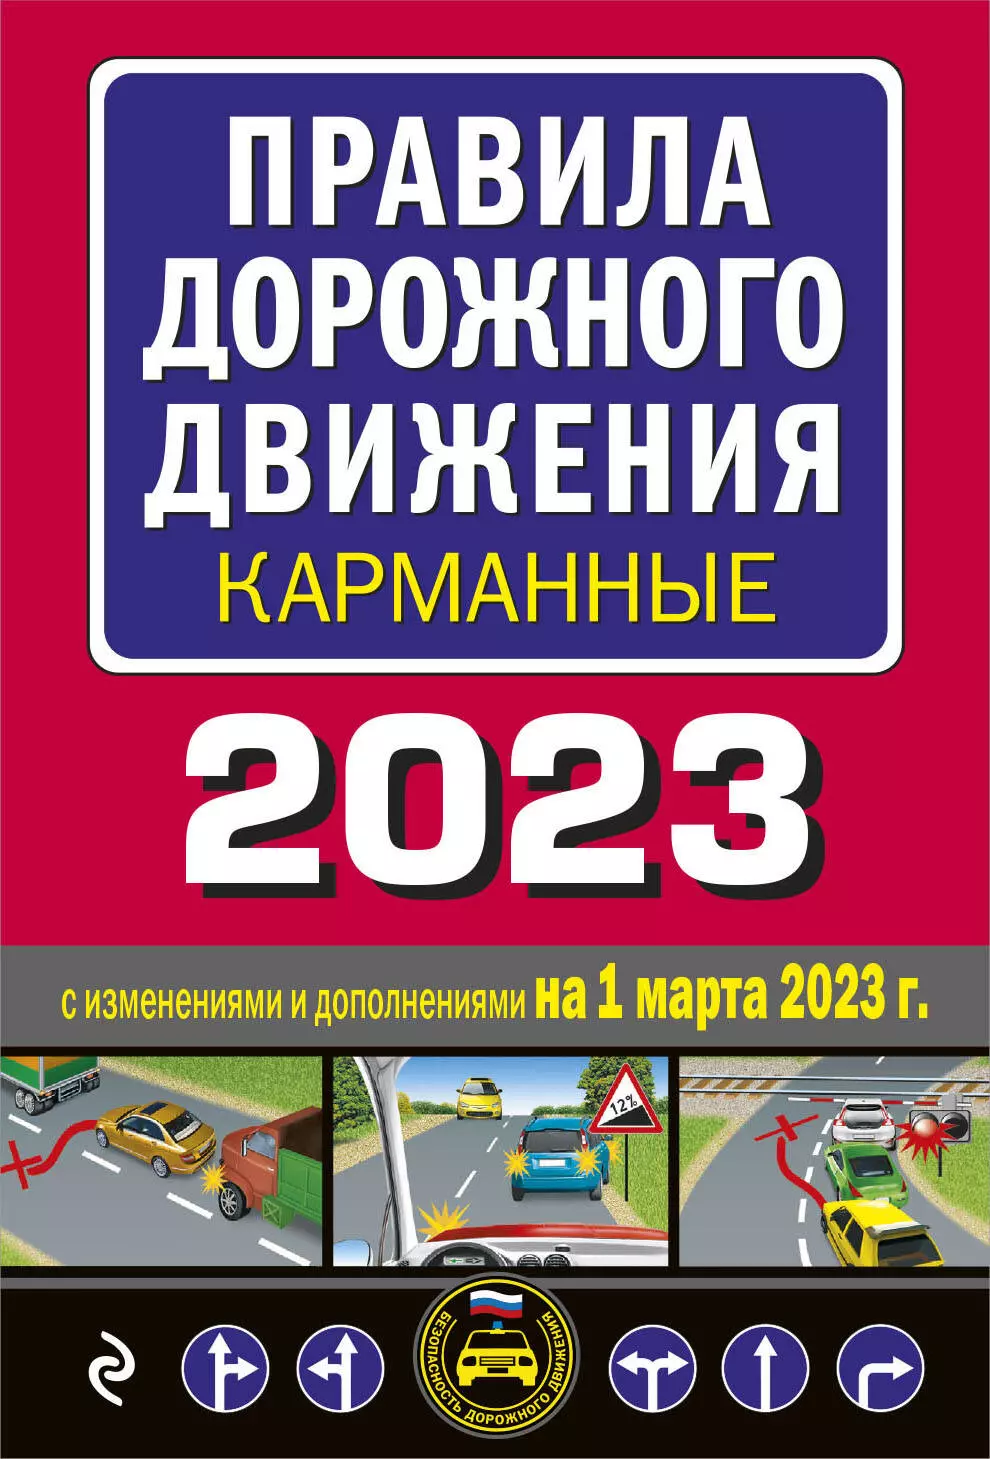  - Правила дорожного движения карманные 2023: с изменениями и дополнениями на 1 марта 2023 года